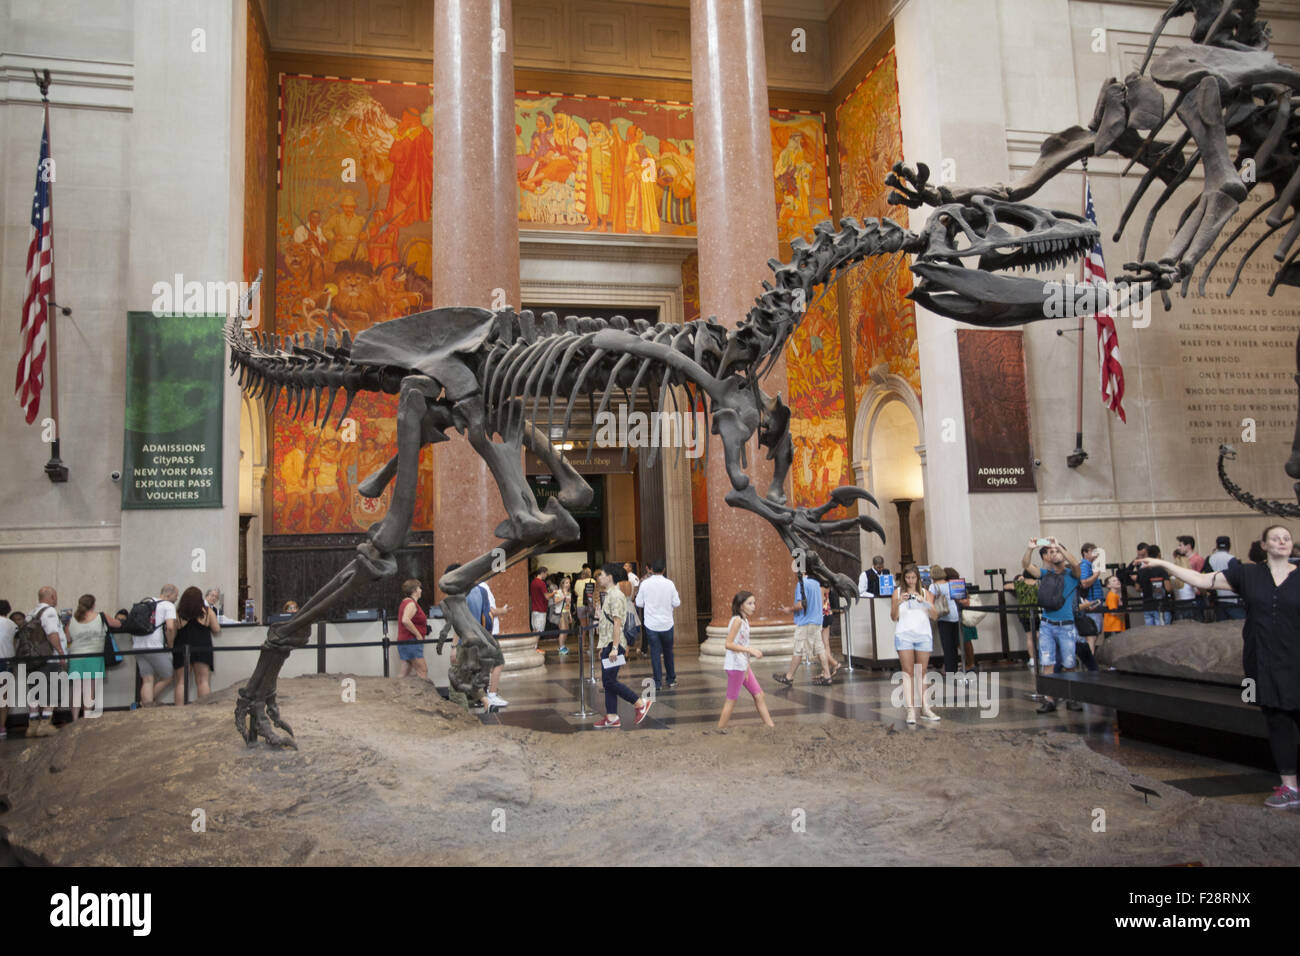 Inmitten der Besucher schützt ein Barosaurus ihre Jungen vor einem angreifenden Allosaurus in der Eingangshalle an das American Museum Of Natural History in Manhattan. Stockfoto